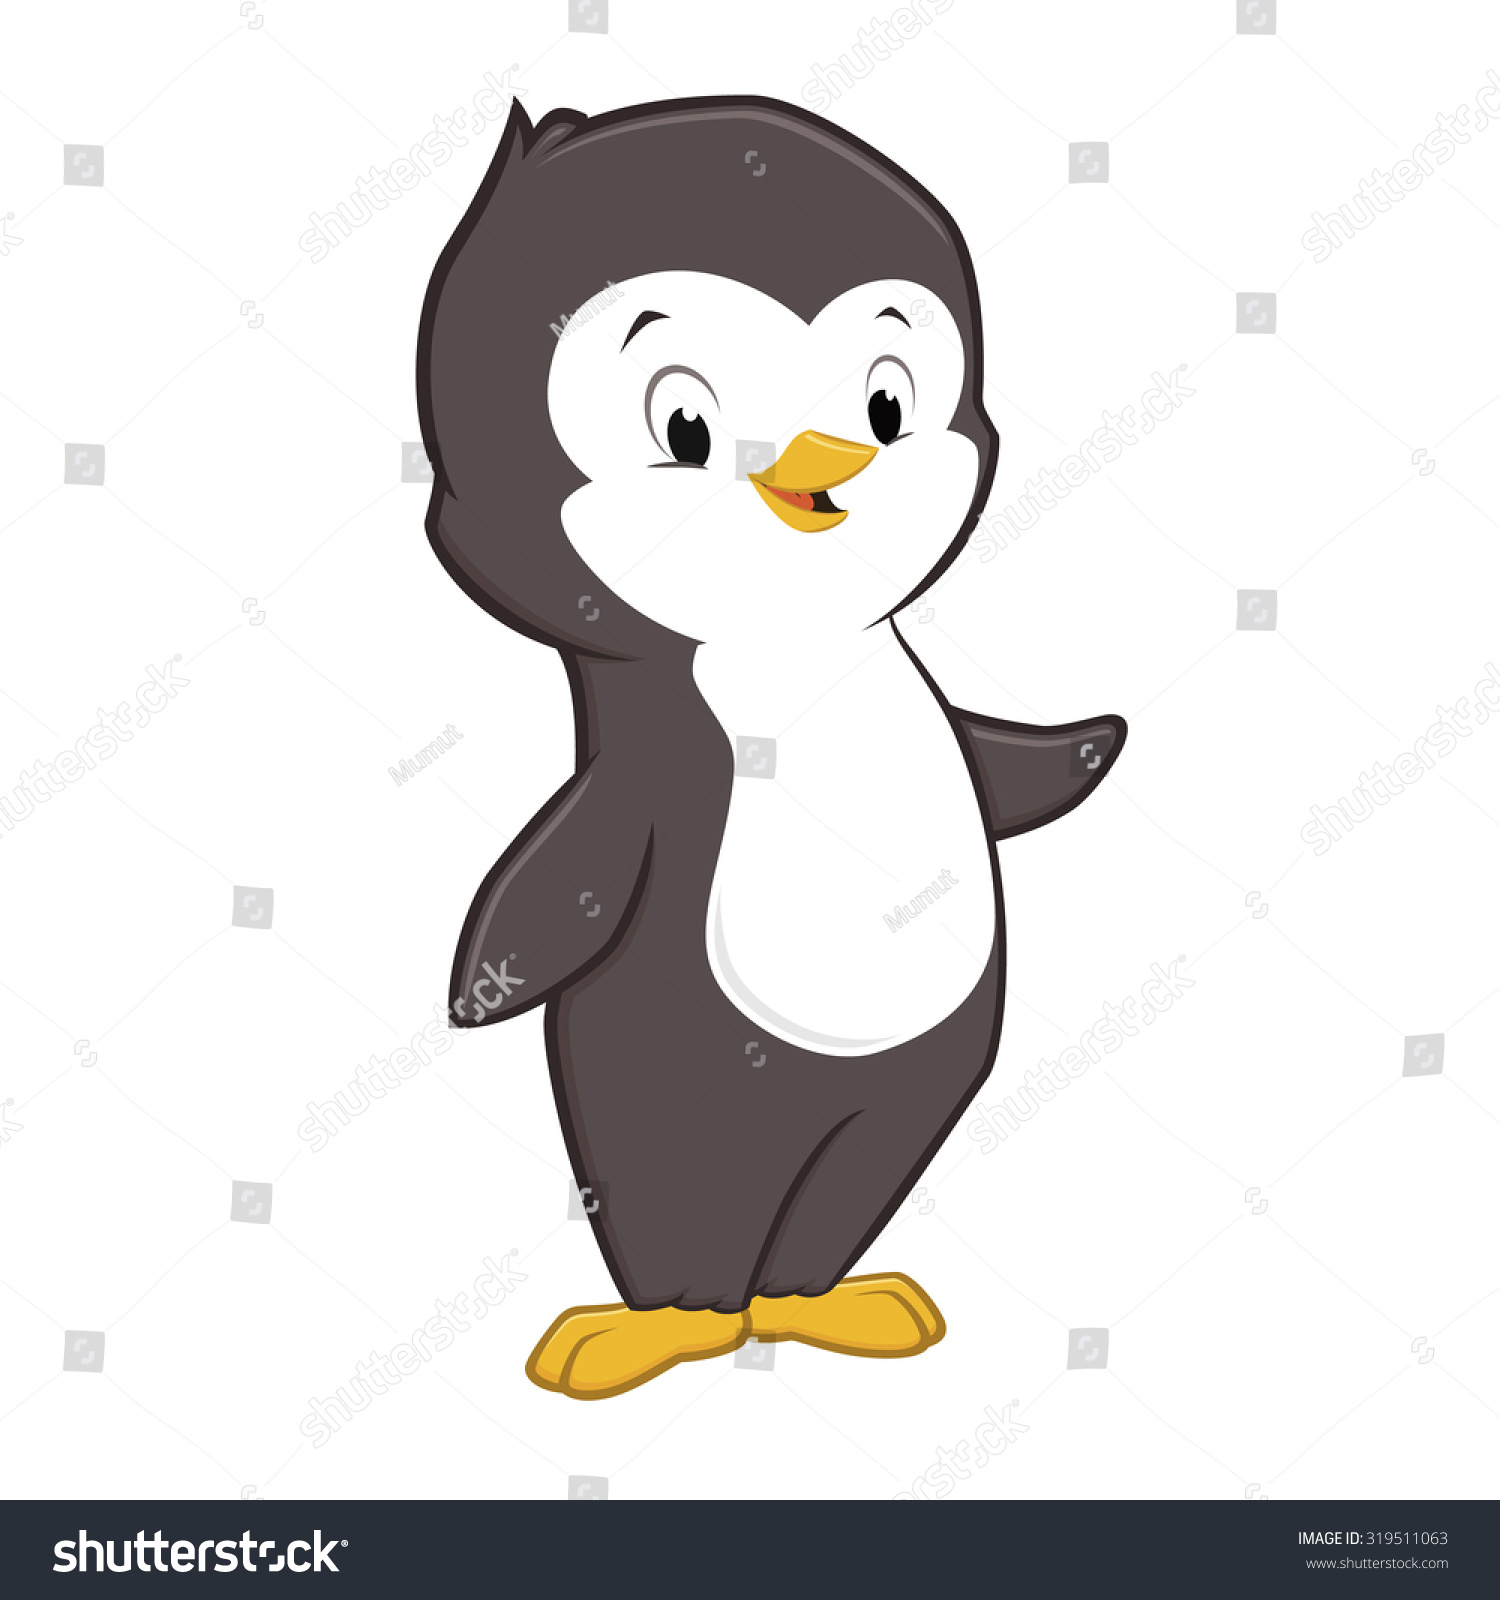 Vector Illustration Of Cute Cartoon Baby Penguin - 319511063 : Shutterstock